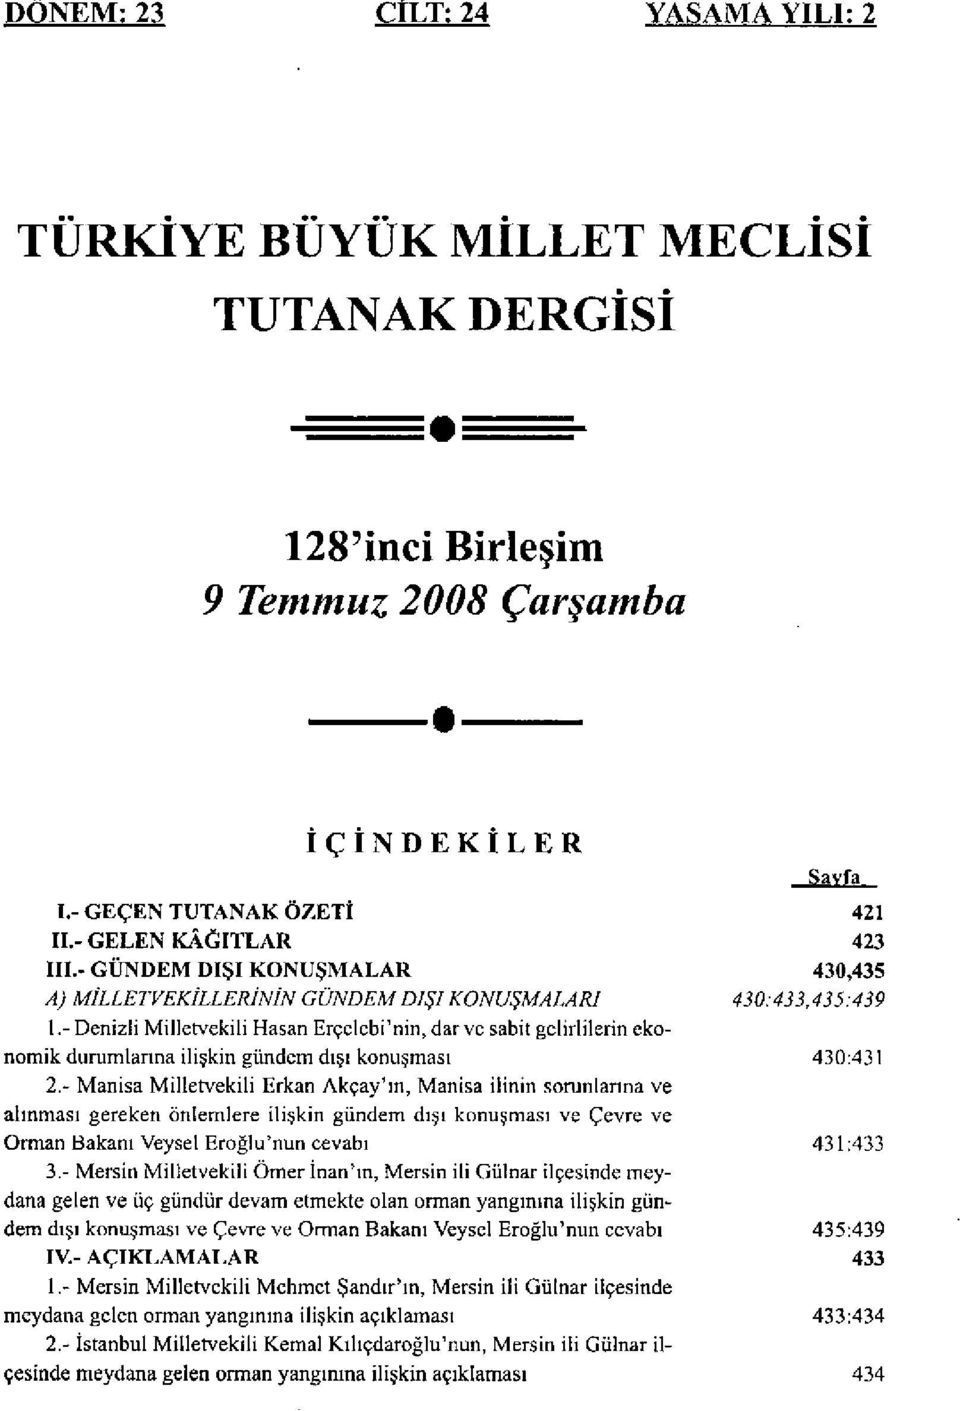 - Denizli Milletvekili Hasan Erçelebi'nin, dar ve sabit gelirlilerin ekonomik durumlarına ilişkin gündem dışı konuşması 430:431 2.